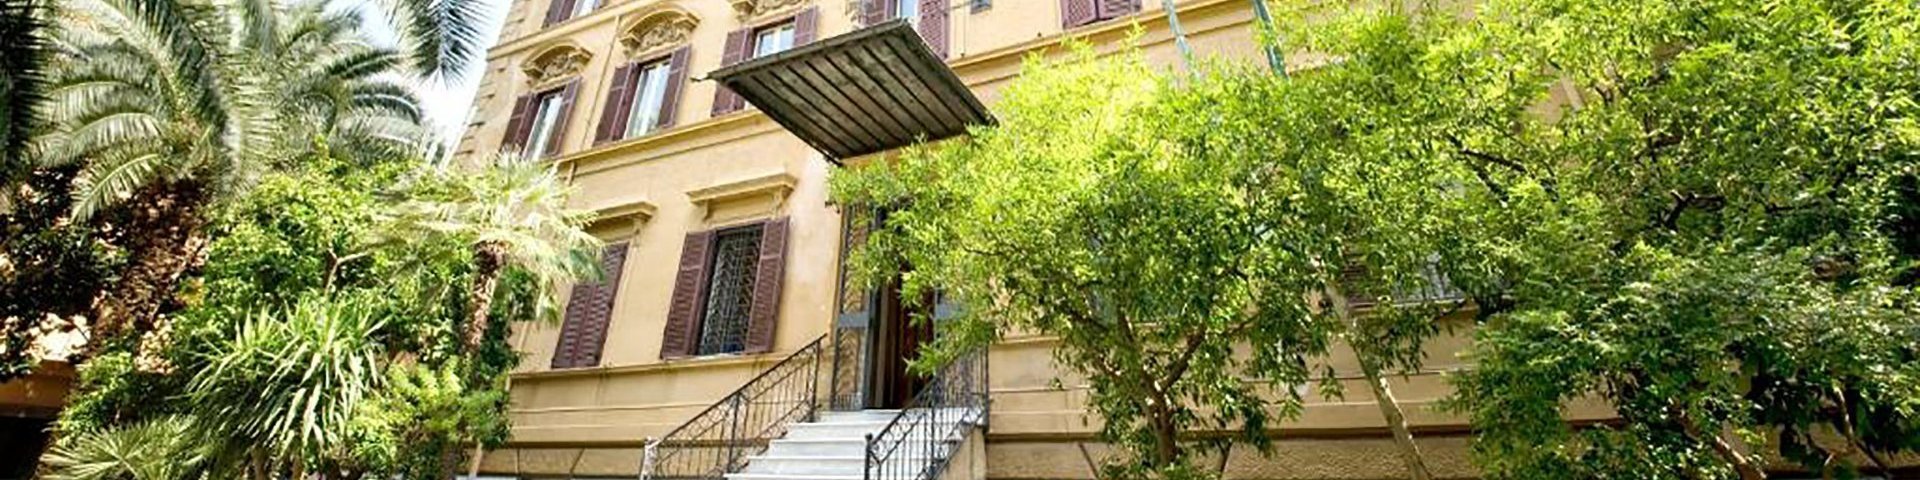 Gästehaus in Rom - zeigt einen Treppenaufgang mit elf Stufen